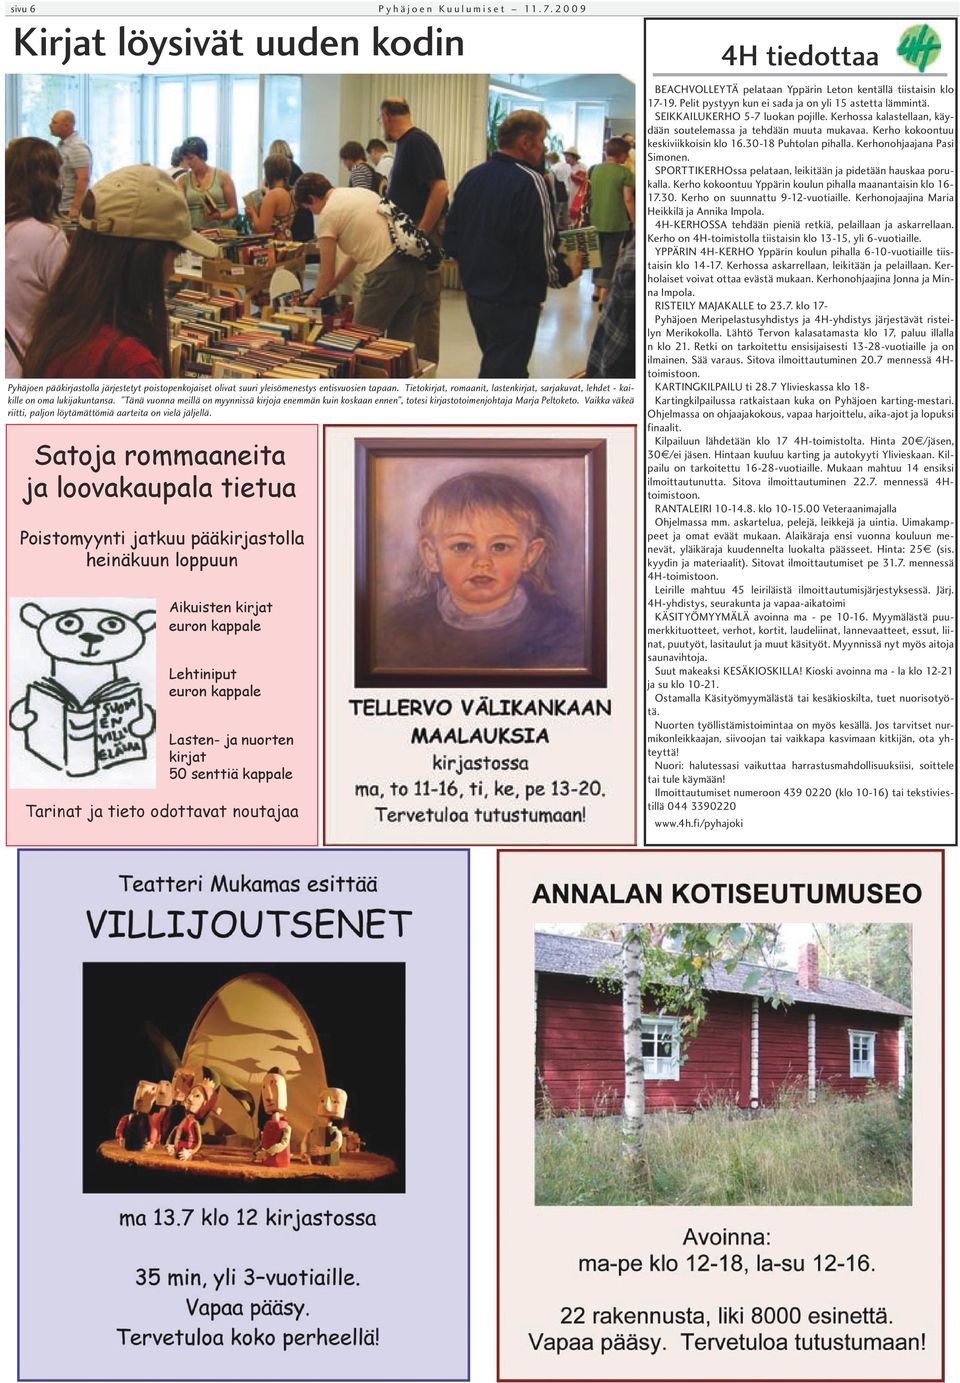 2009 Pyhäjoen pääkirjastolla järjestetyt poistopenkojaiset olivat suuri yleisömenestys entisvuosien tapaan. Tietokirjat, romaanit, lastenkirjat, sarjakuvat, lehdet - kaikille on oma lukijakuntansa.